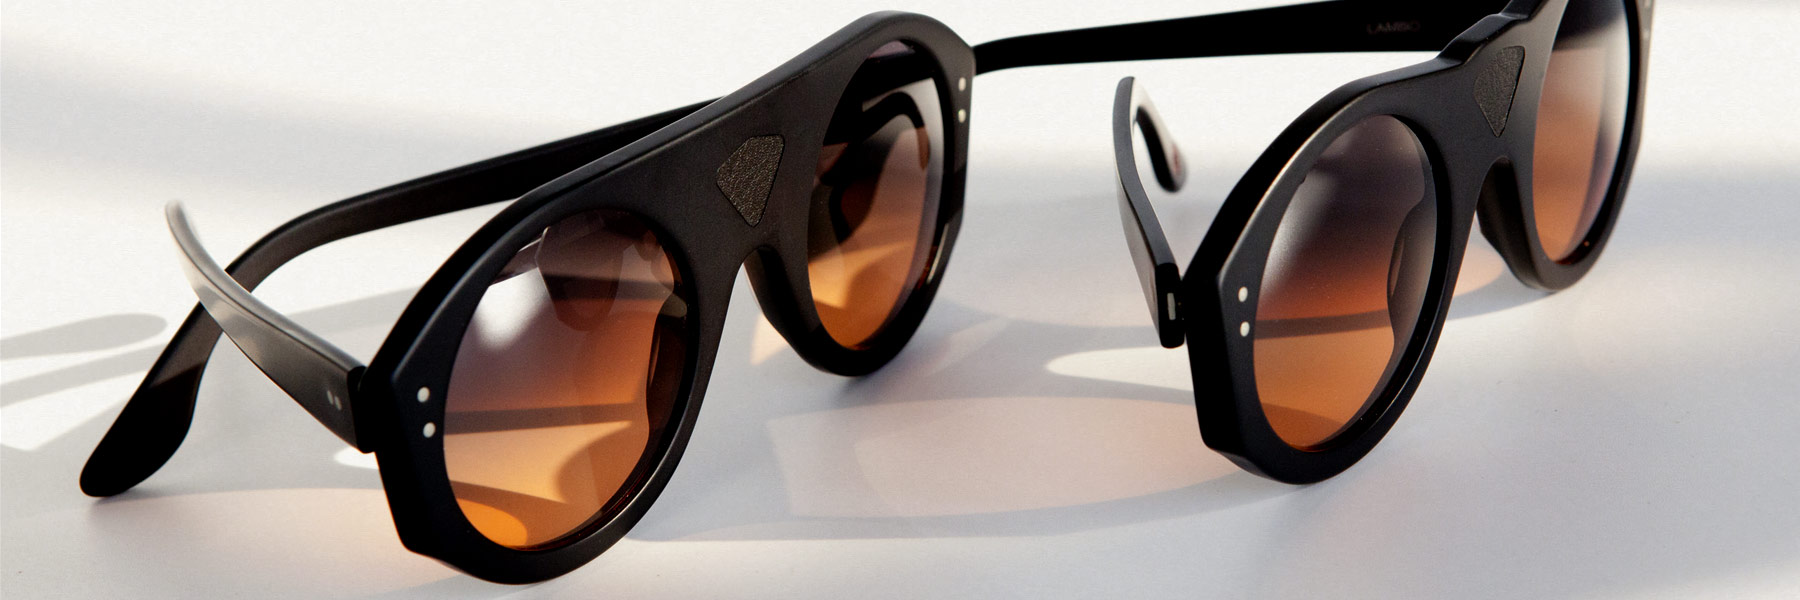 Wilde-Sunglasses-Occhiali-Lambo-driver-Collection-Collezione-2015-2016-Barcelona_Sunglasses_design_by_rob_adalierd5.jpg